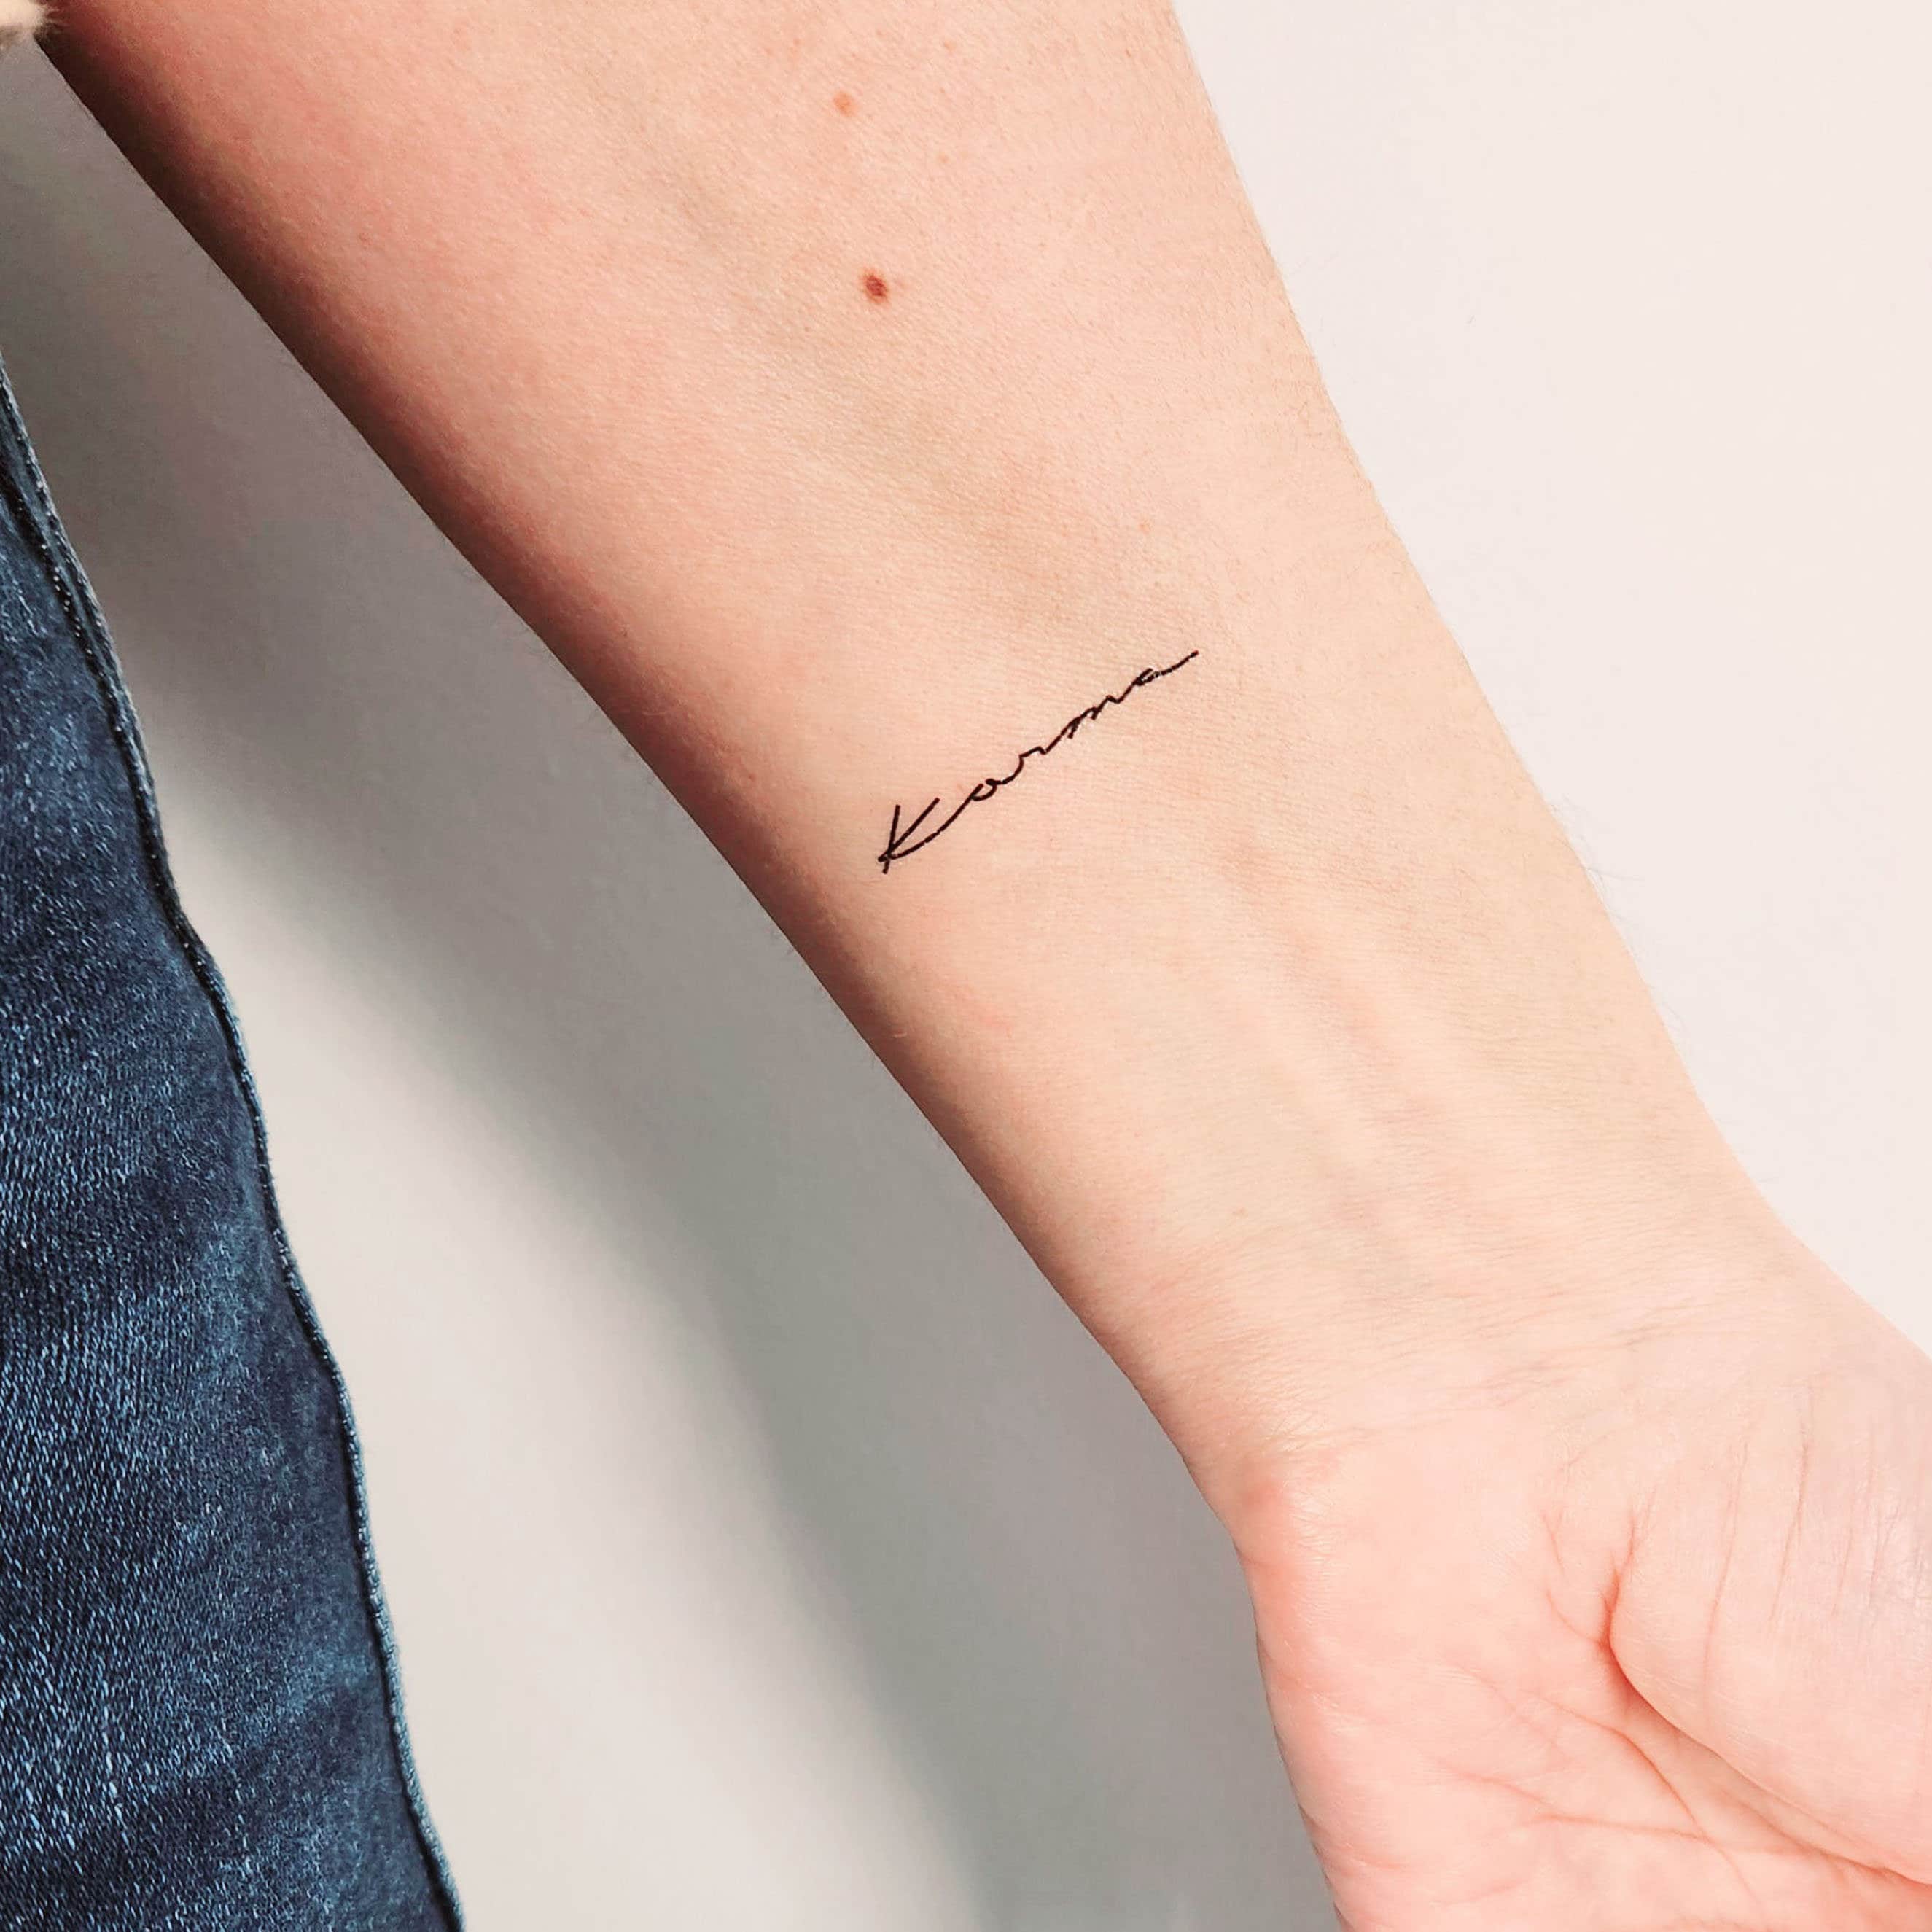 Karma tattoo in red ink | Karma tattoo, Tattoos, Get a tattoo